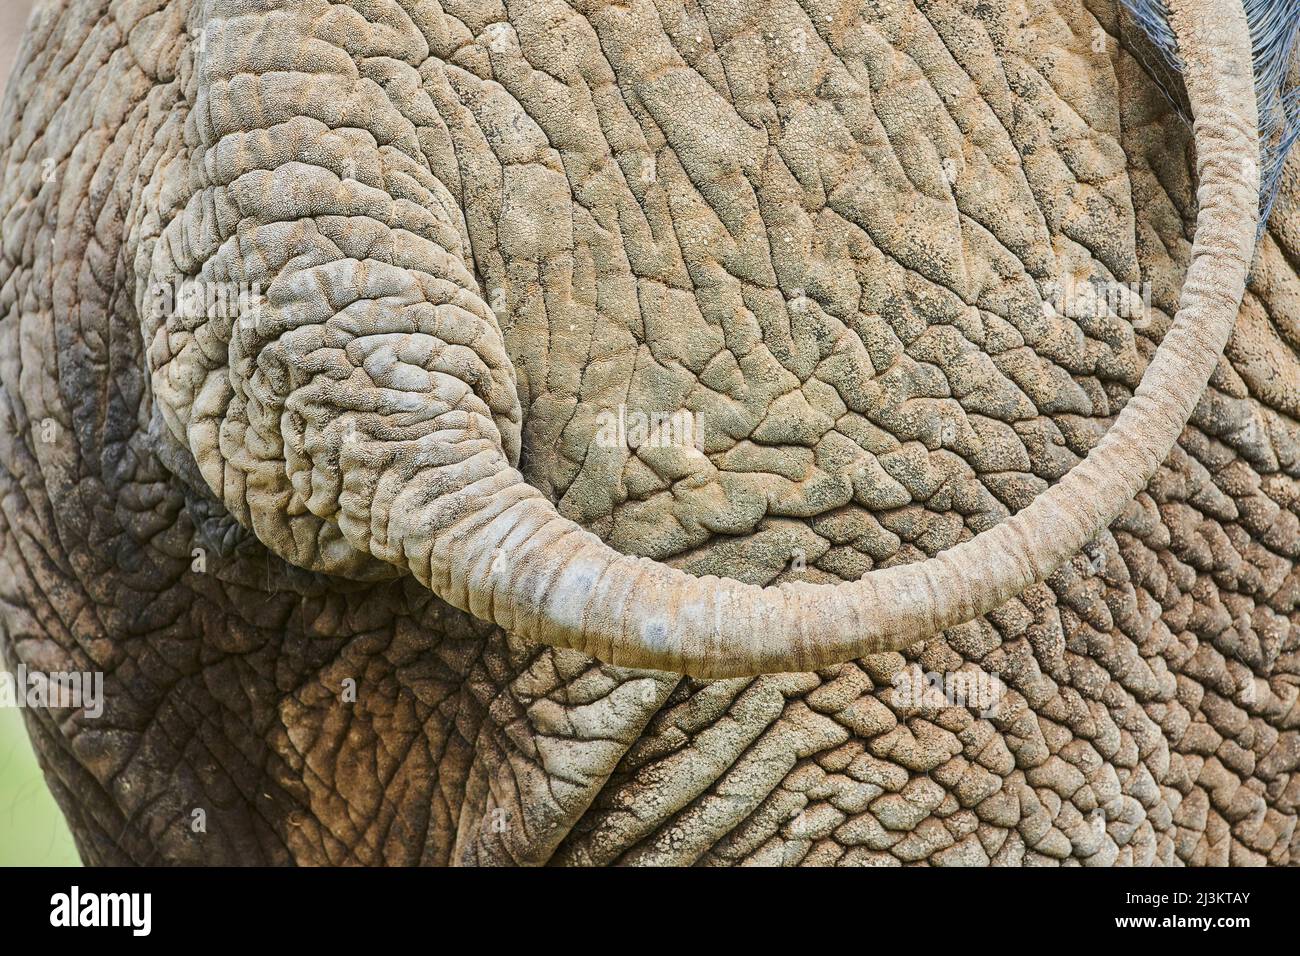 Detalle de primer plano de la piel arrugada, la parte posterior y la cola de un elefante arbusto africano (Loxodonta africana), cautivo; República Checa Foto de stock